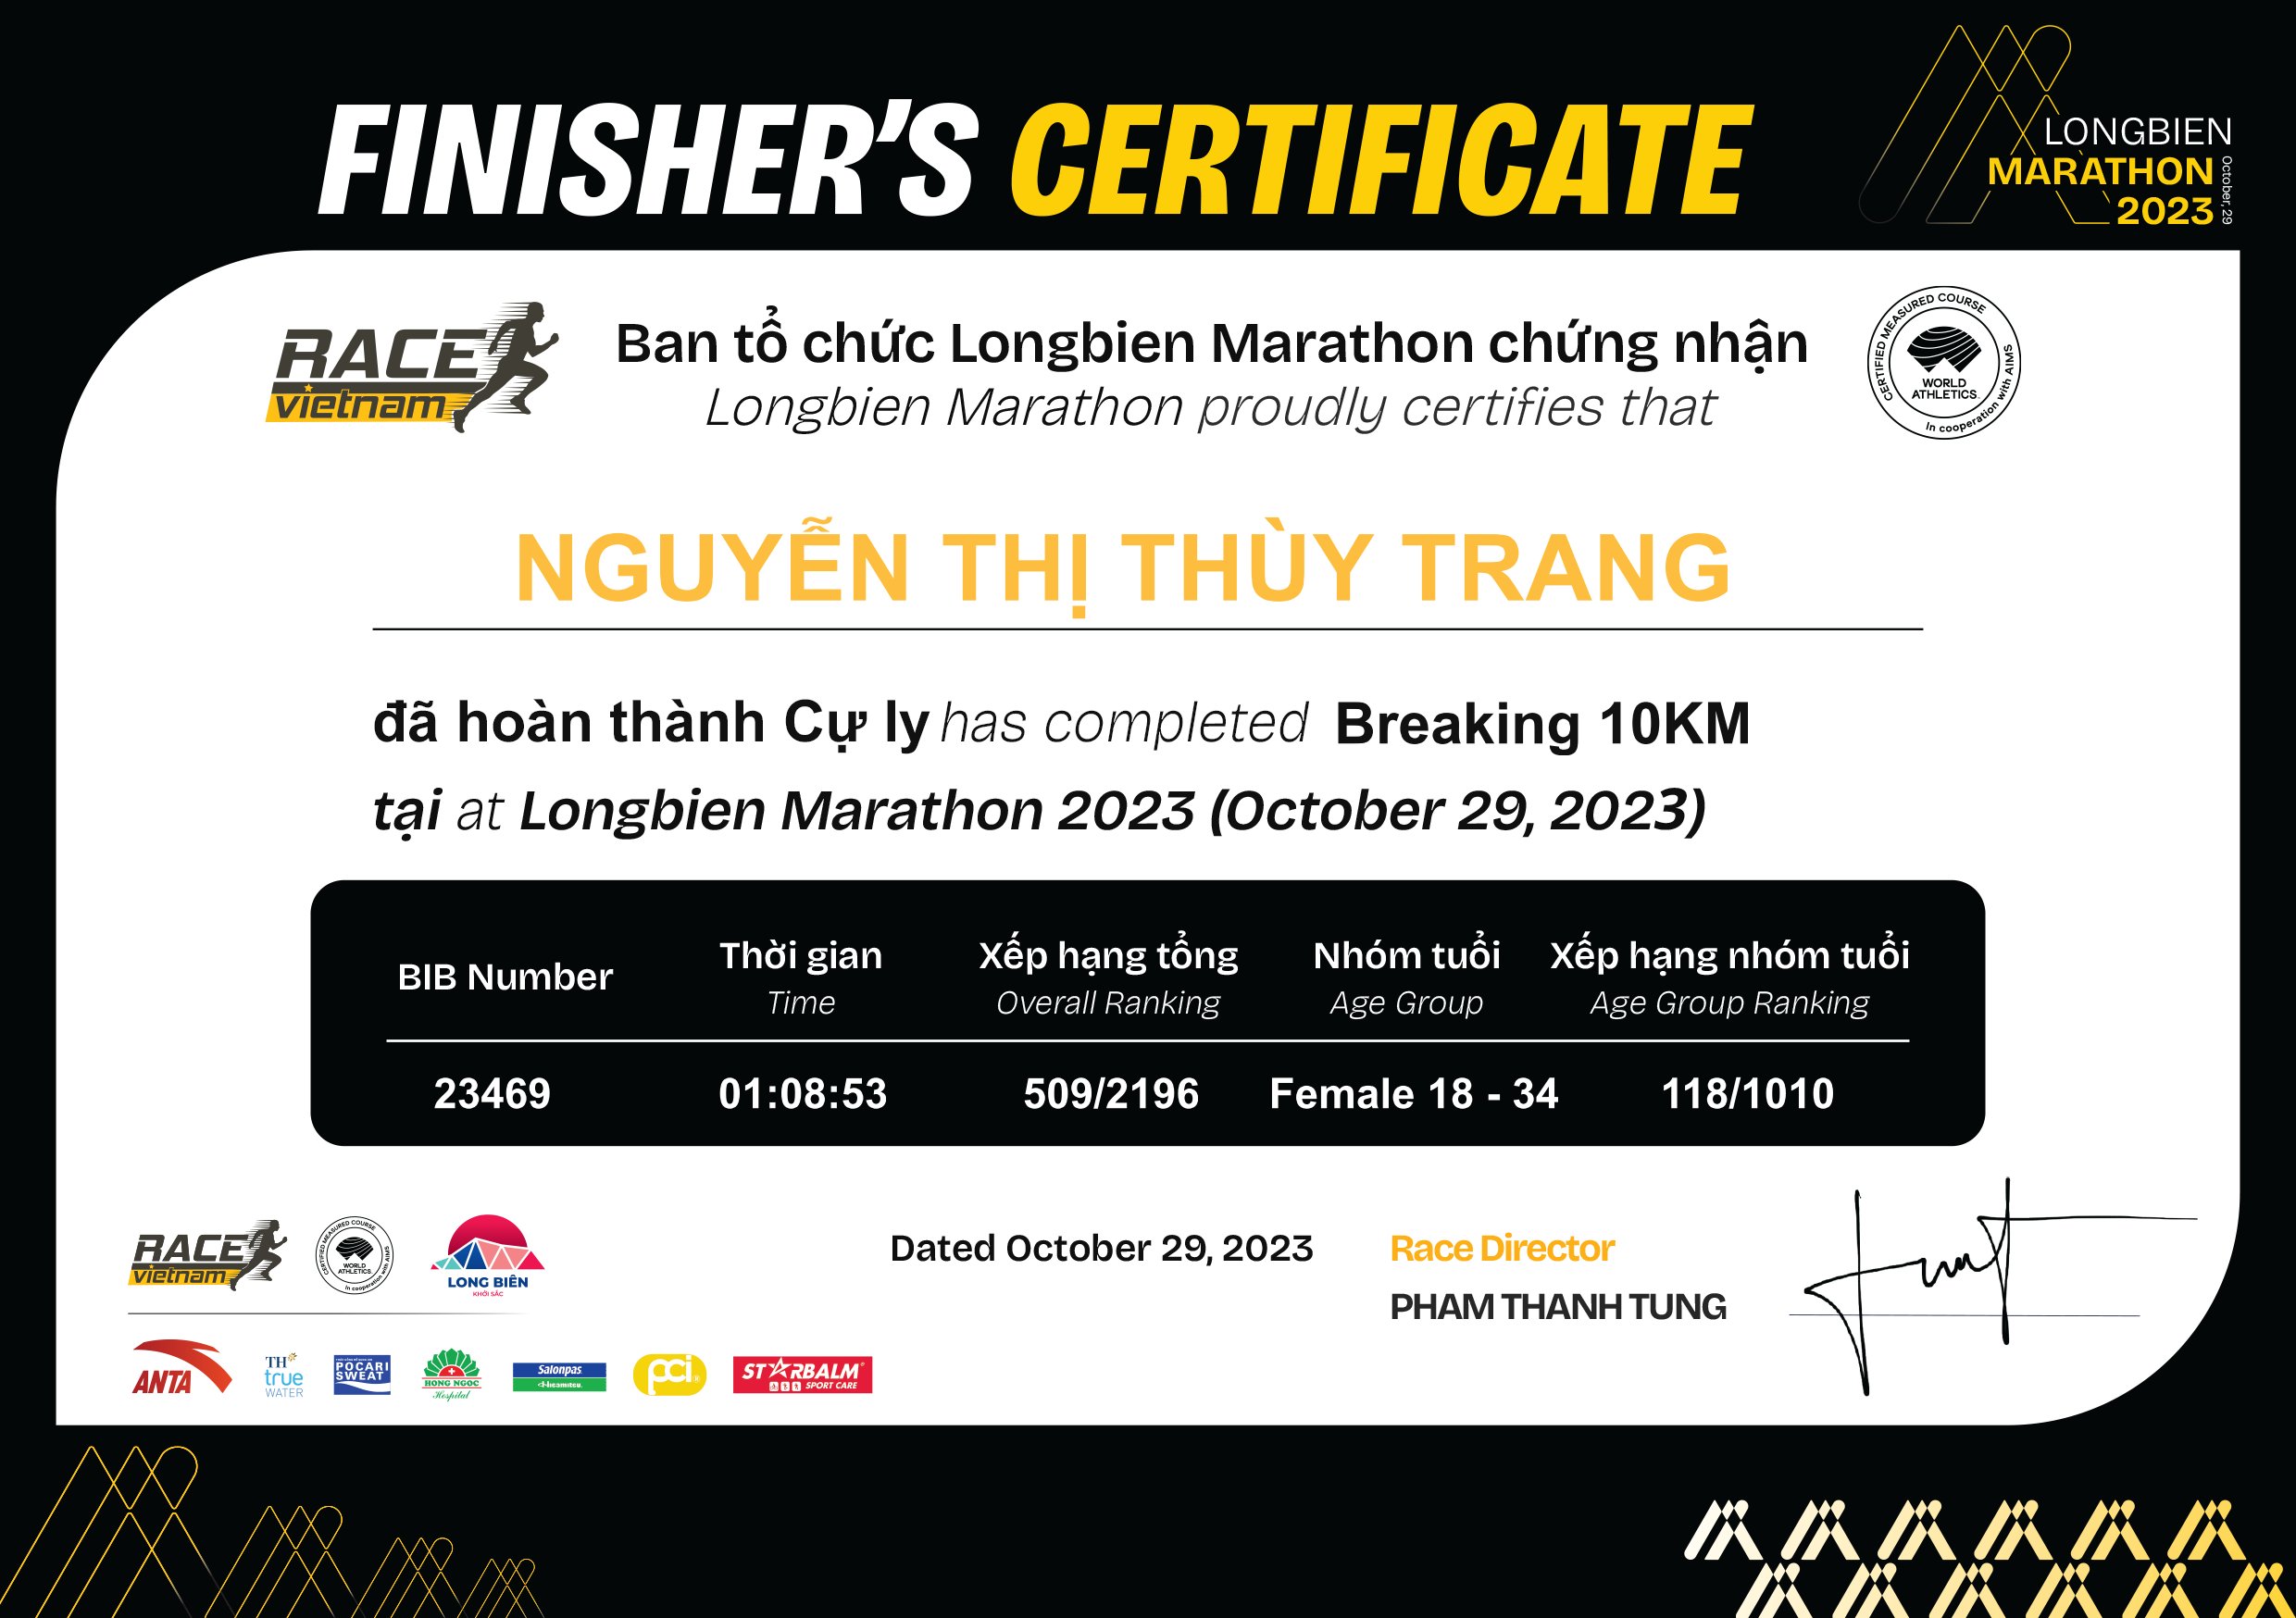 23469 - Nguyễn Thị Thùy Trang